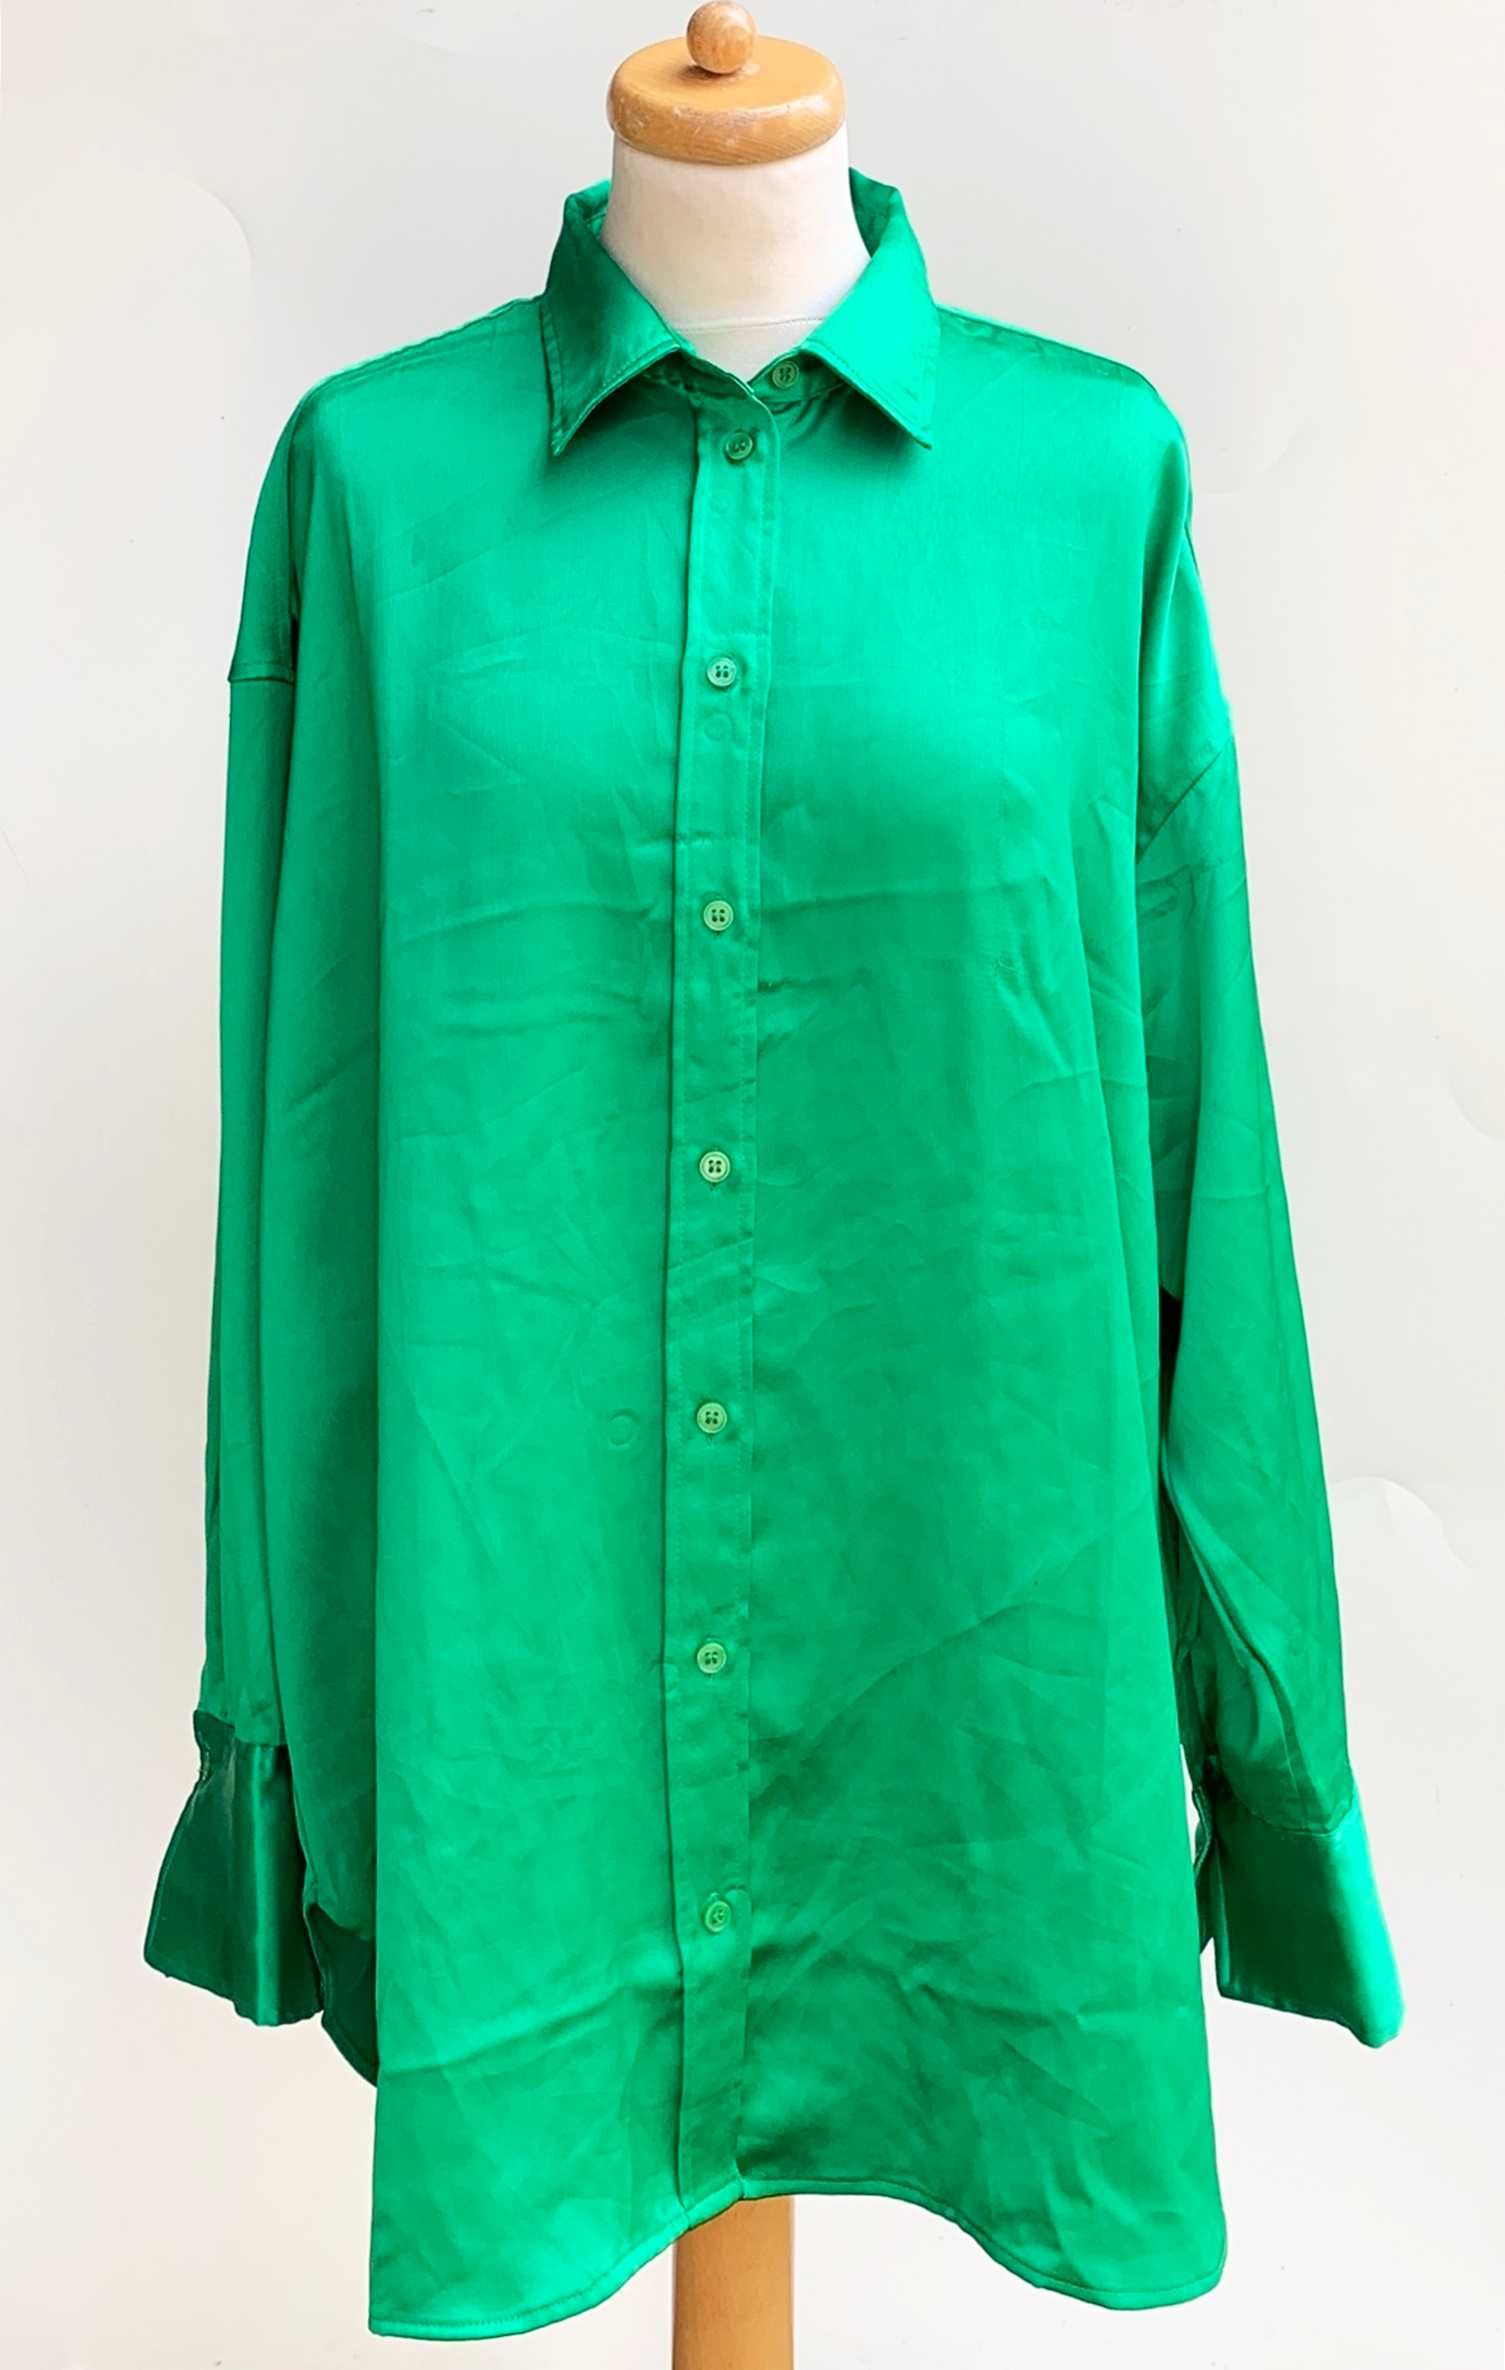 Koszula Zielona H&M Zieleń Trawiasta M 38 Połyskująca